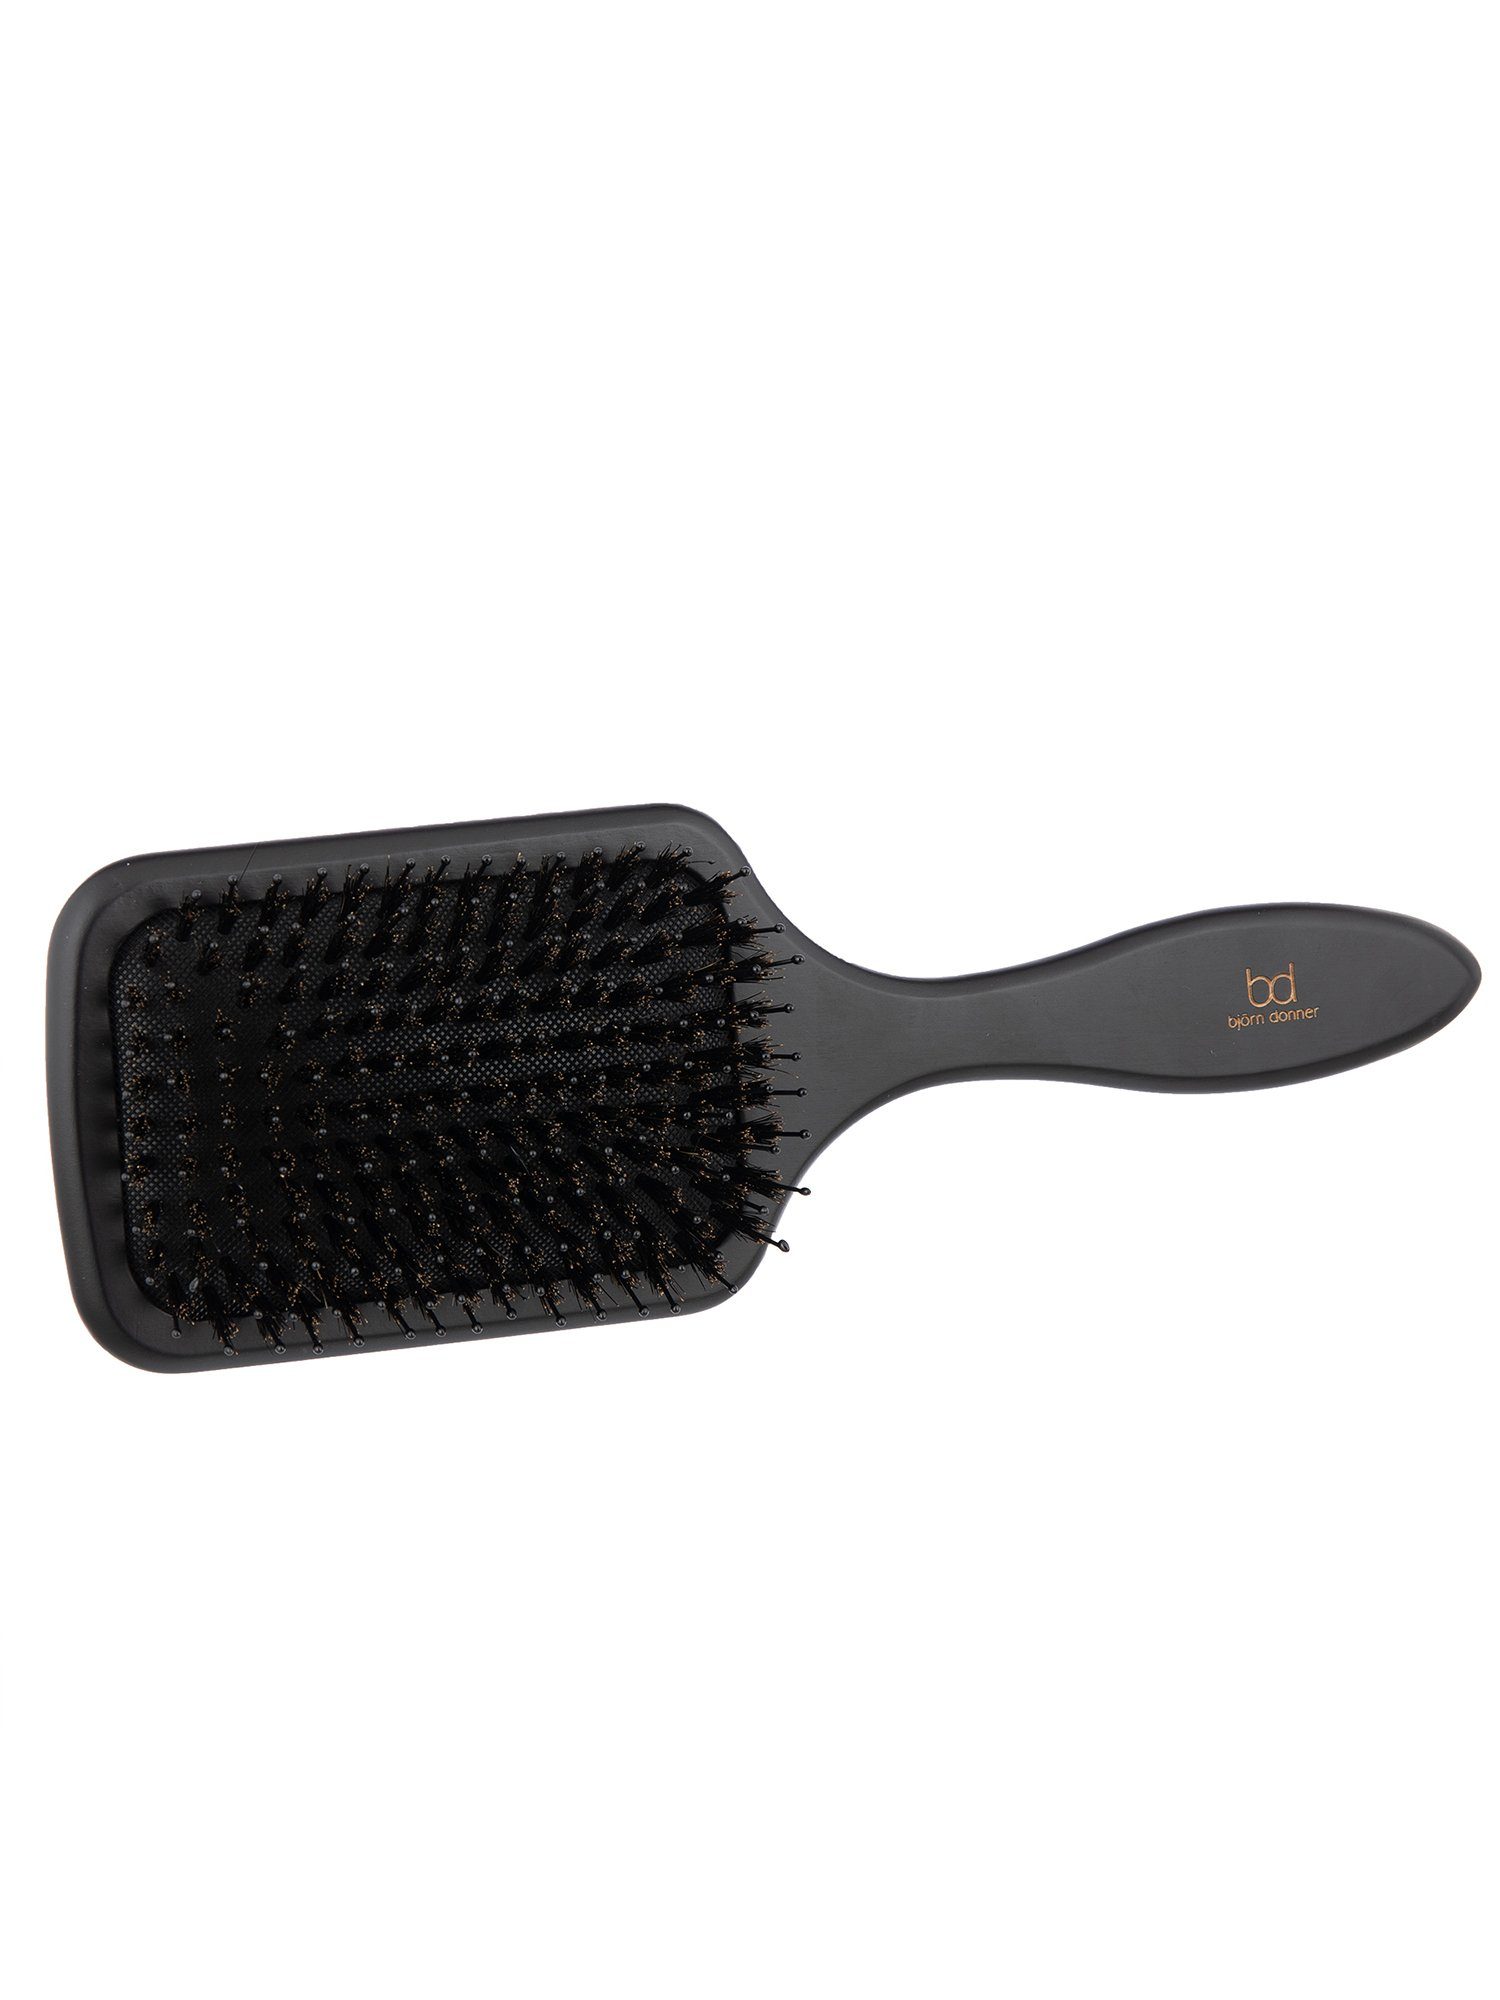 Björn Donner Haarbürste "Paddle Brush", mit Wildschweinborsten & benoppten Nylonstiften für mehr Glanz im Haar